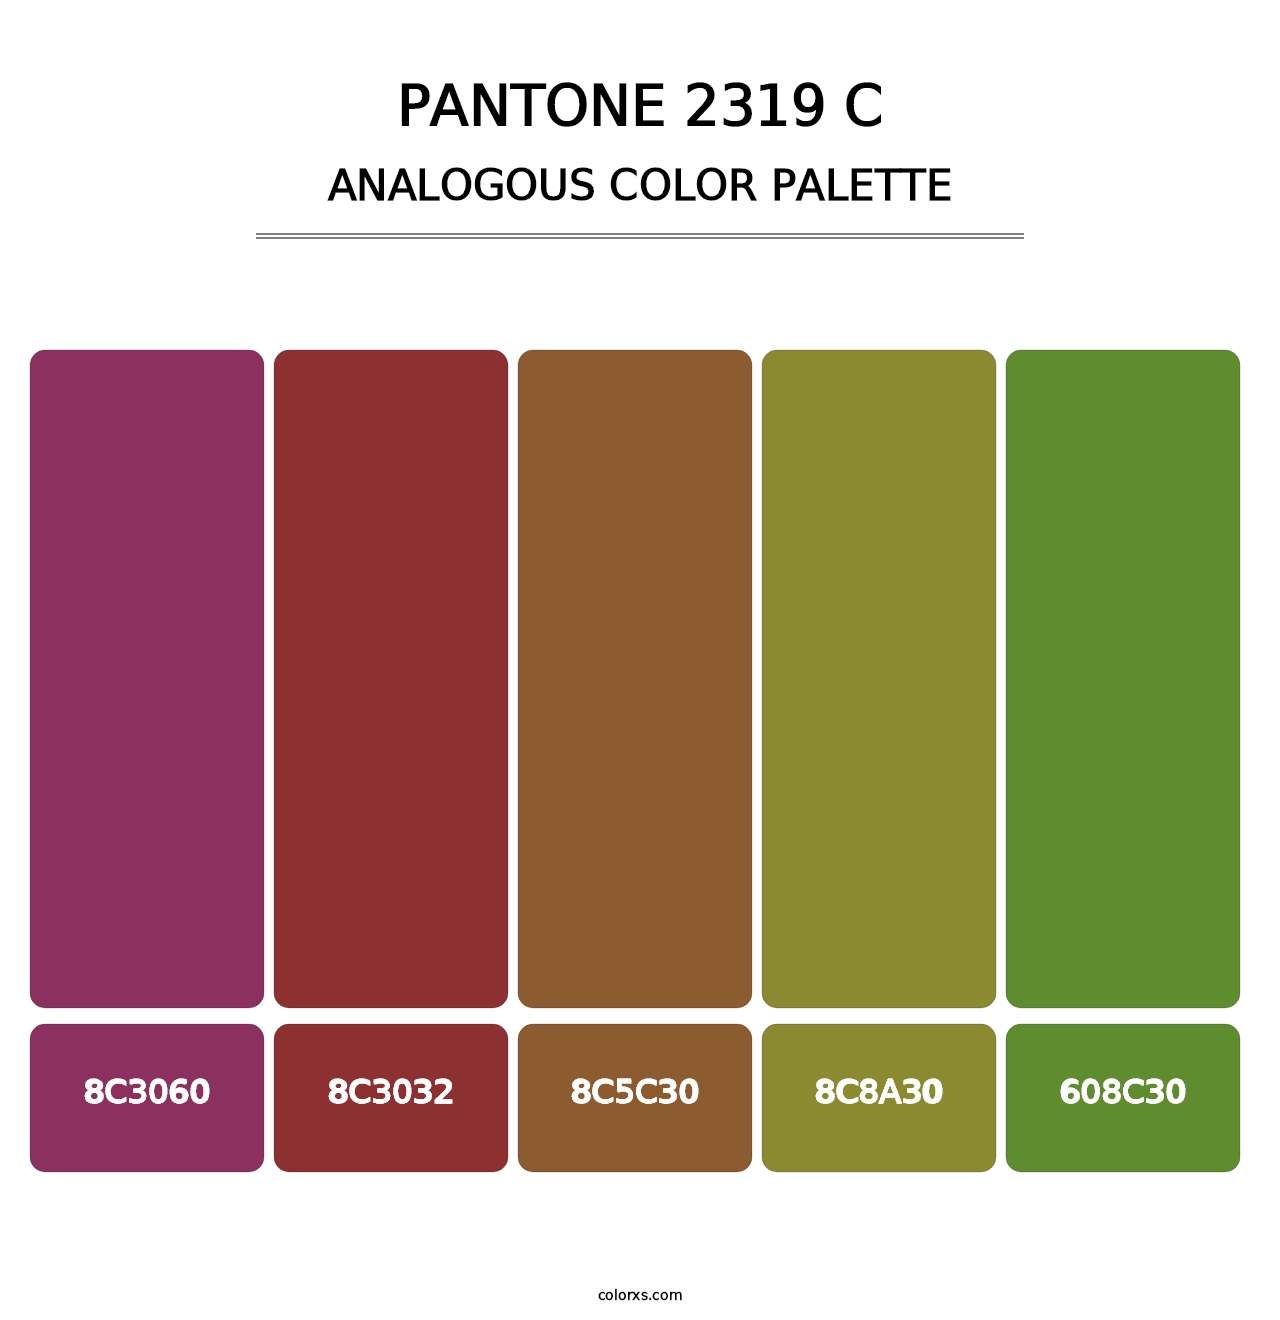 PANTONE 2319 C - Analogous Color Palette